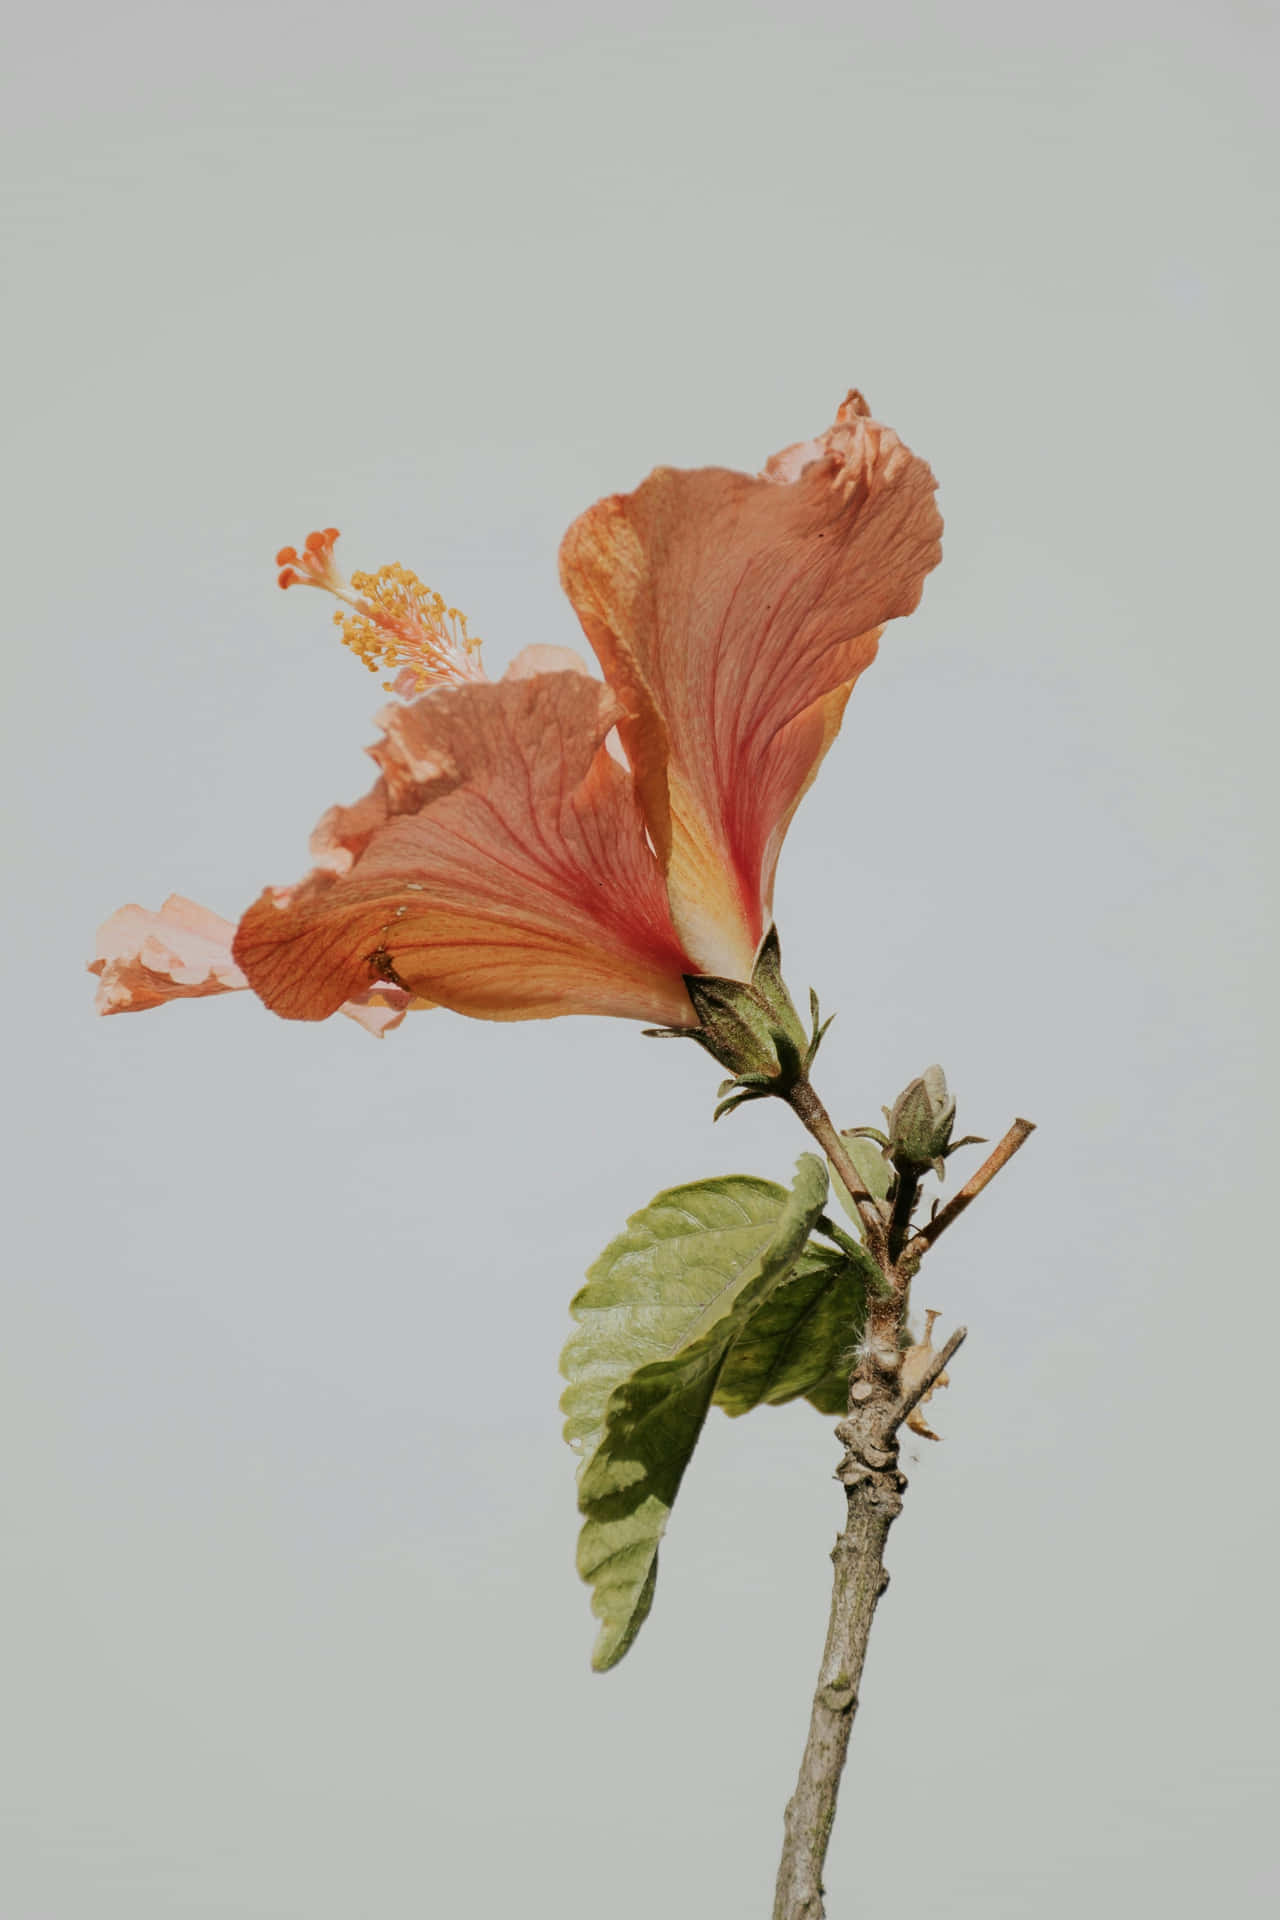 Elegant Hibiscus Flower Aesthetic.jpg Wallpaper